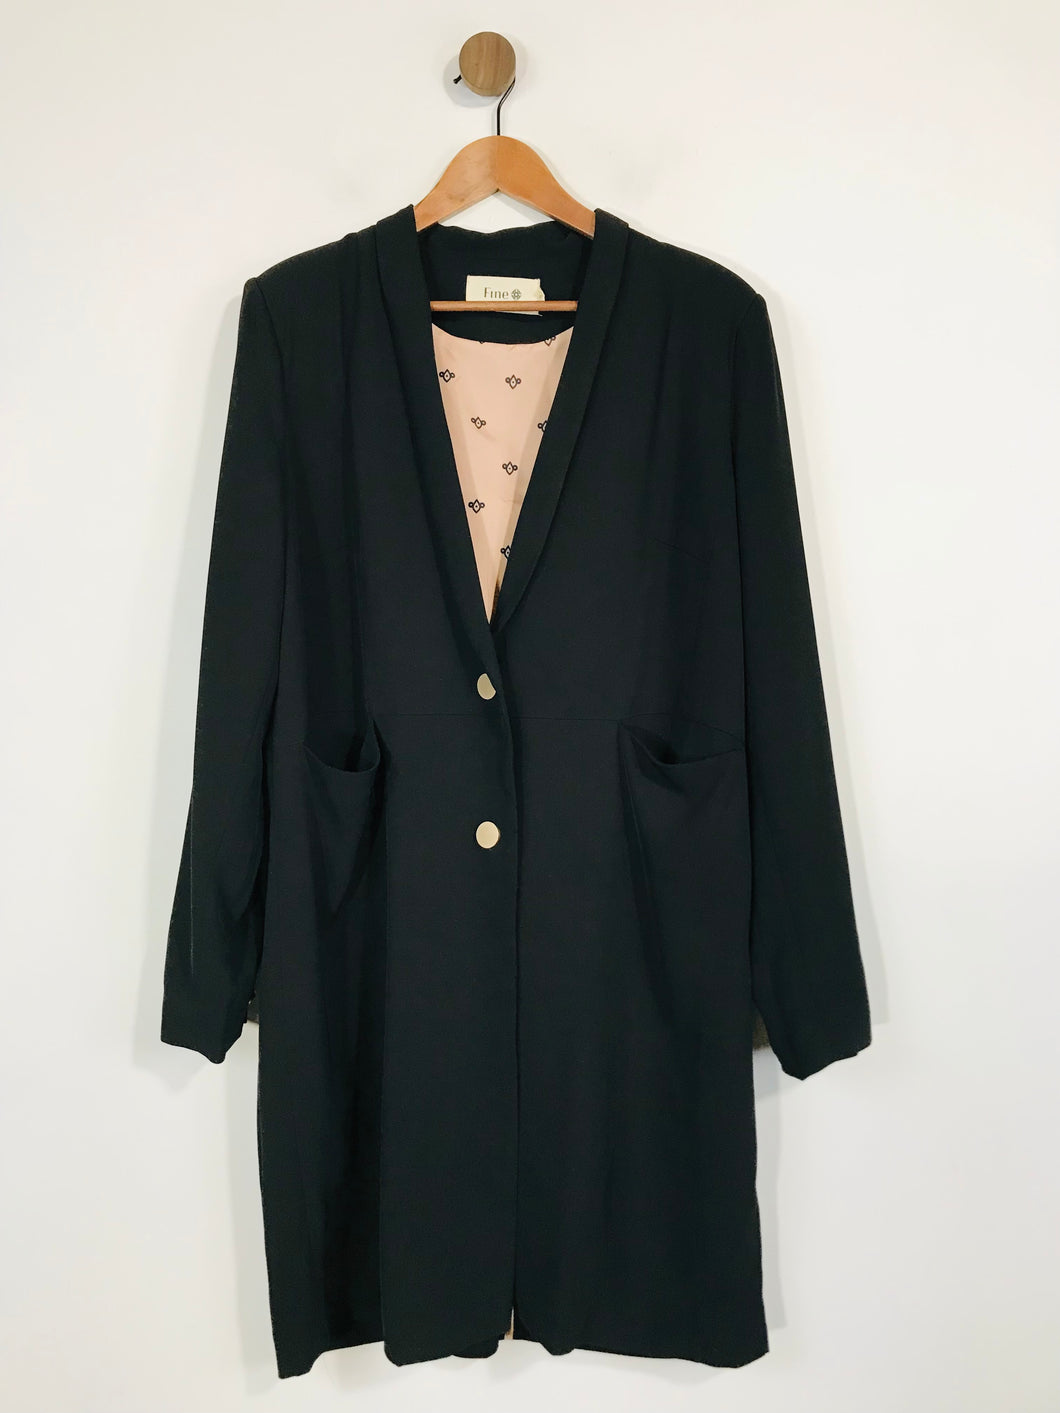 Fine Copenhagen Women's Long Blazer Jacket | XL UK16 | Black